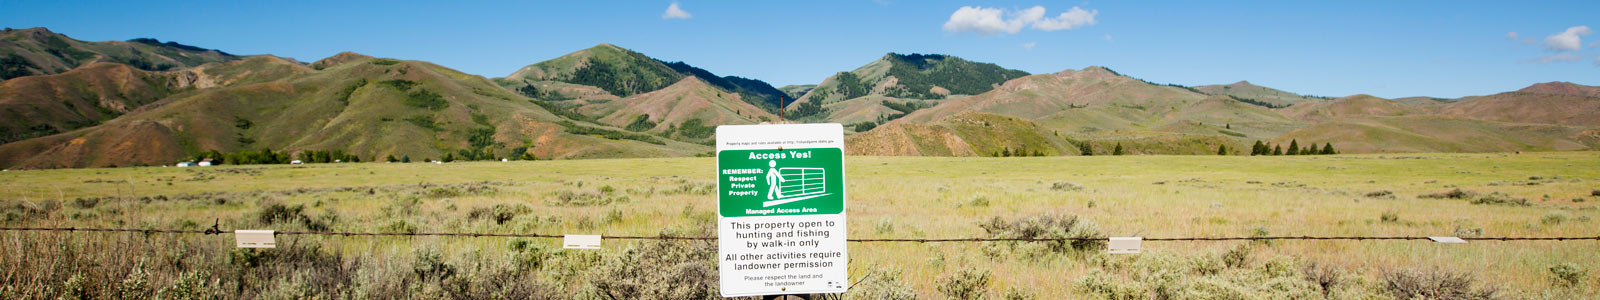 AccessYes! signage on property fence. Photo by Glenn Oakley